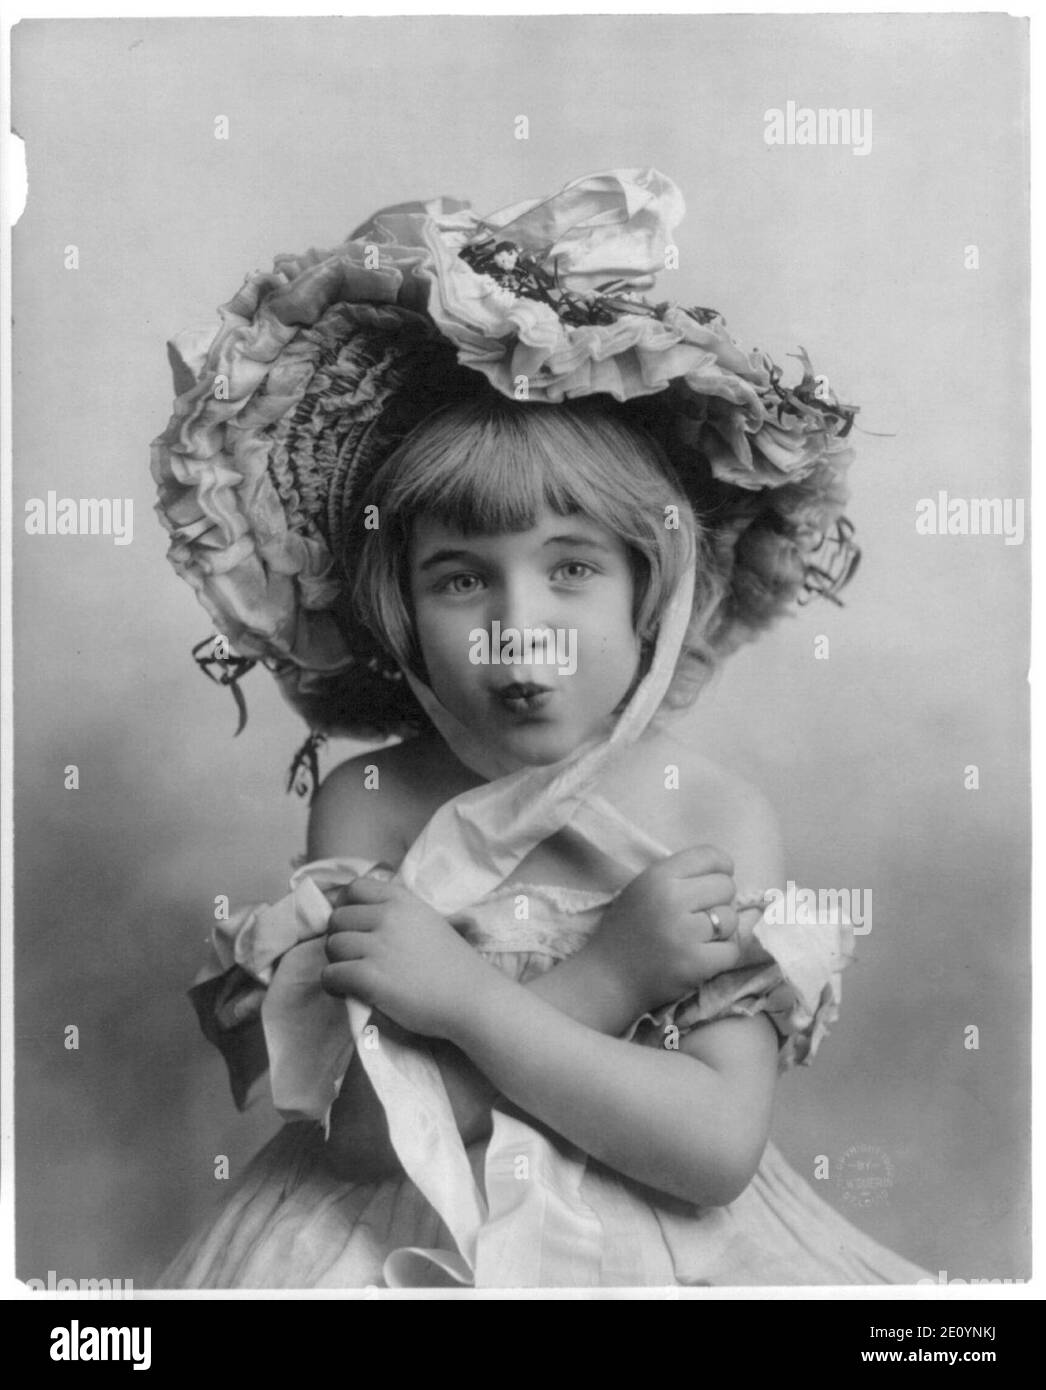 3 ans, fille de porter un bonnet Photo Stock - Alamy